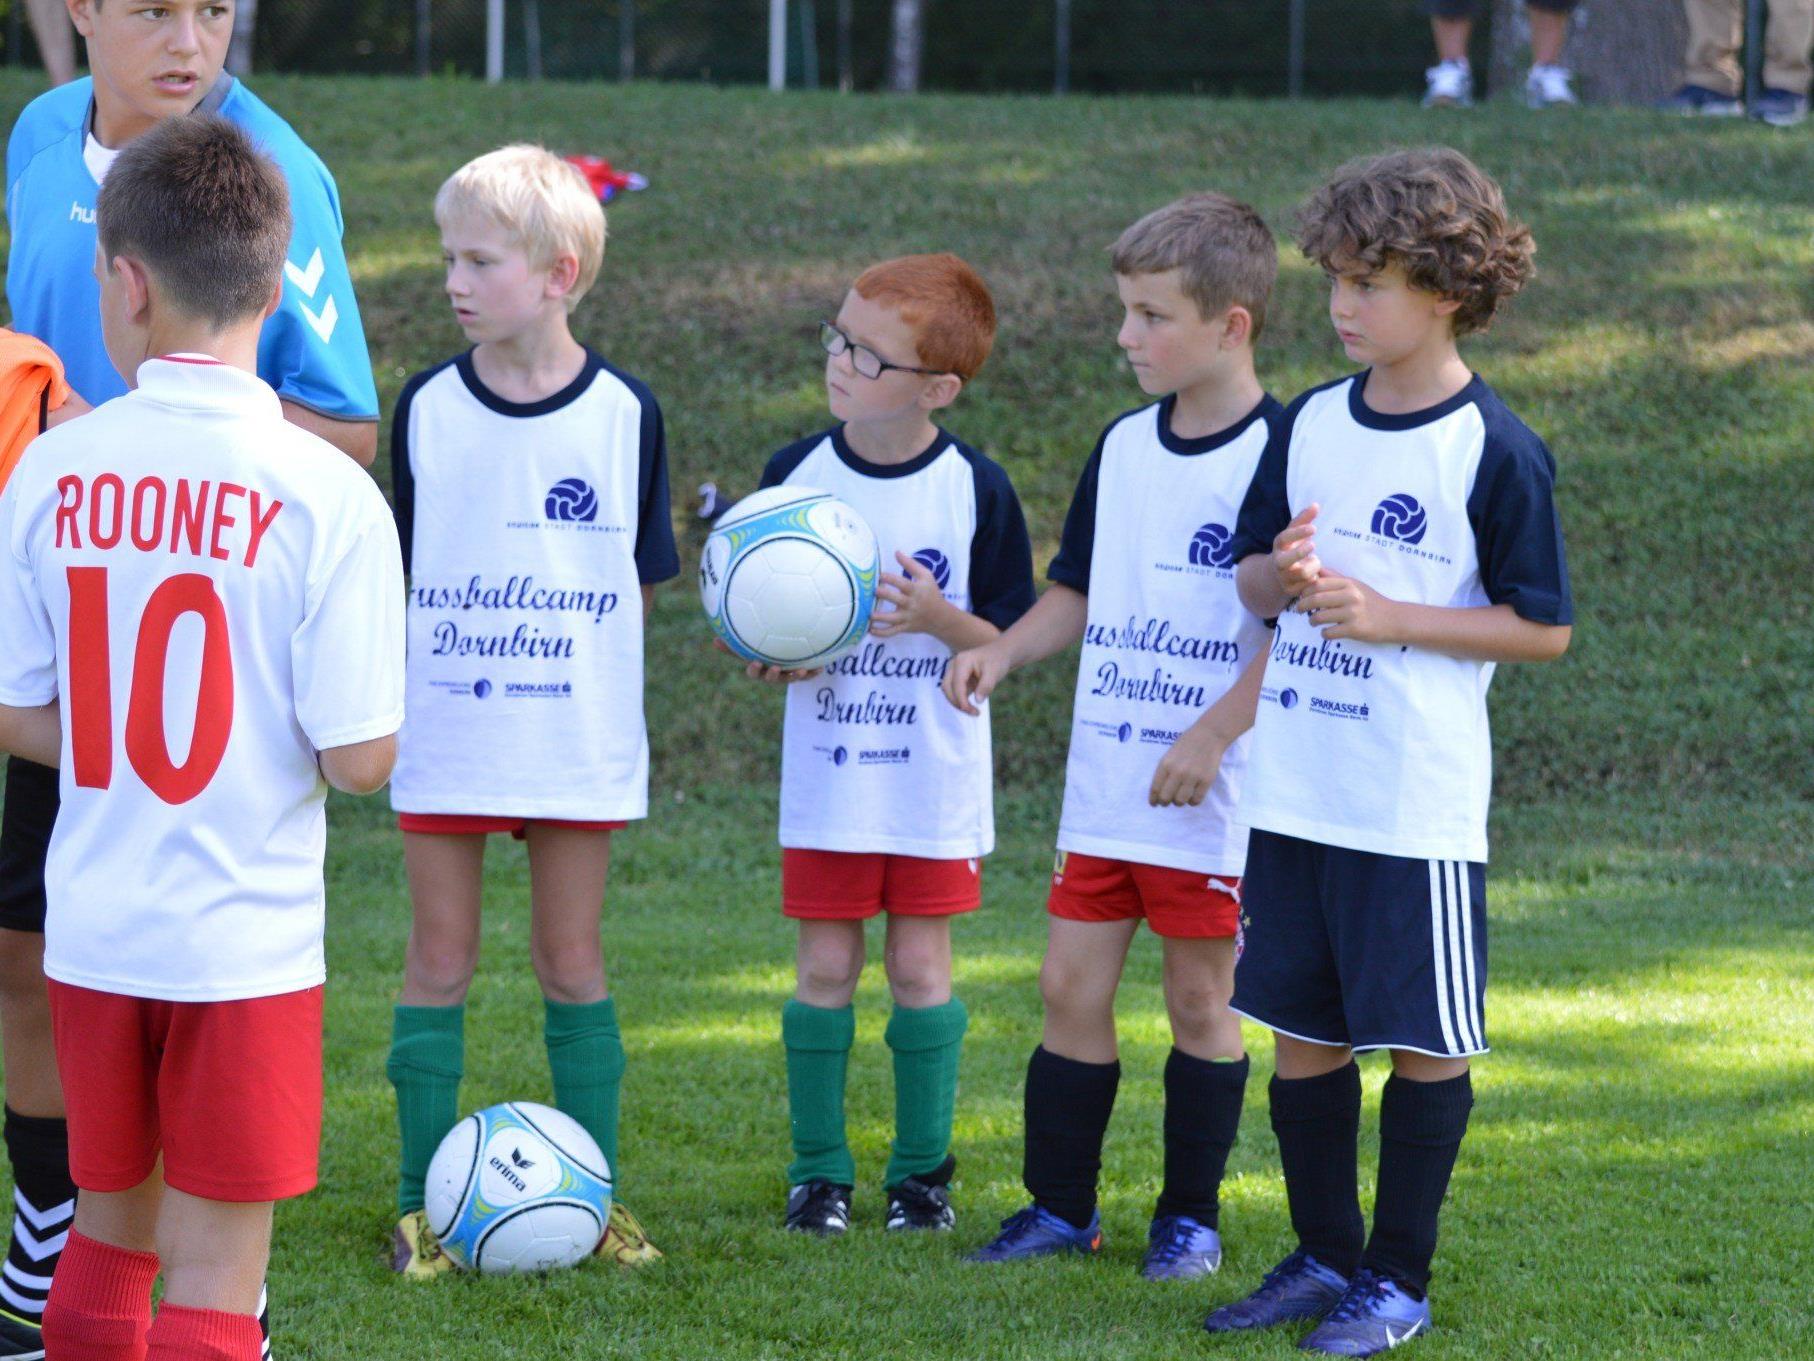 In den Sommerferien ist dank des Dornbirner Sparkasse Fußballcamps wieder für Spaß rund um den Ball gesorgt.